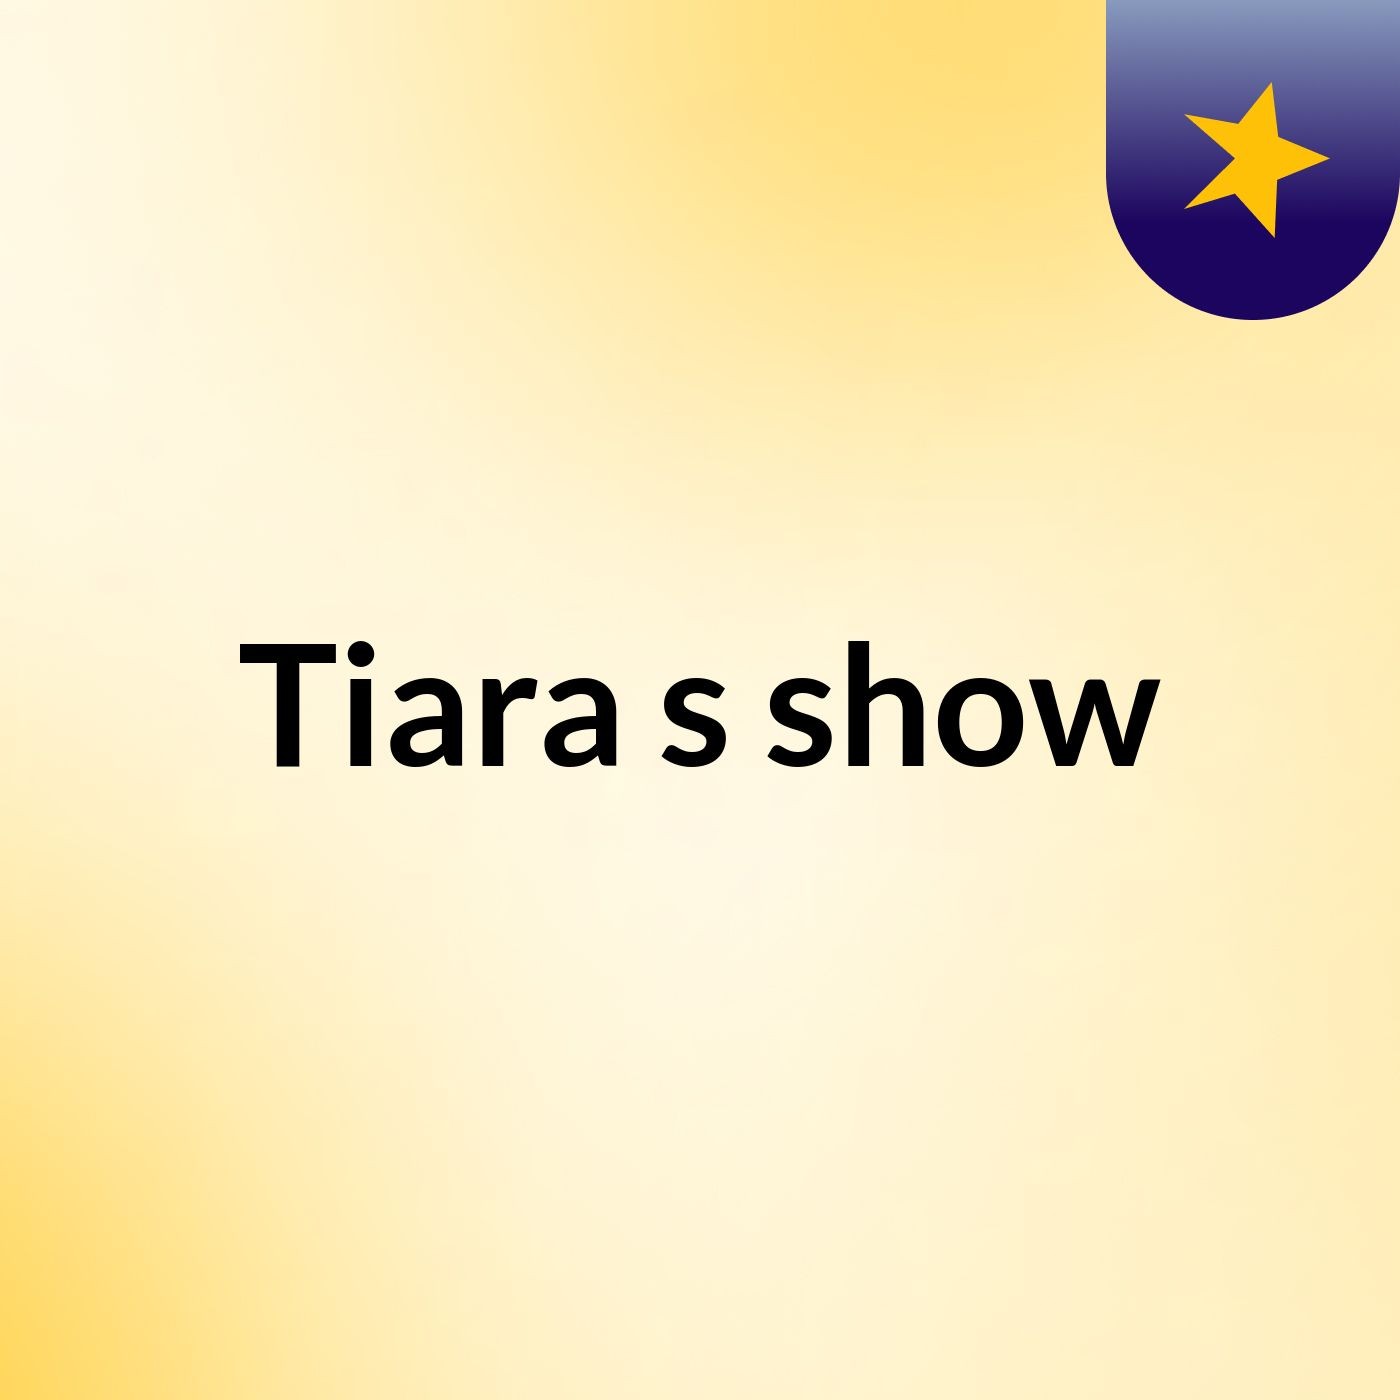 Tiara's show